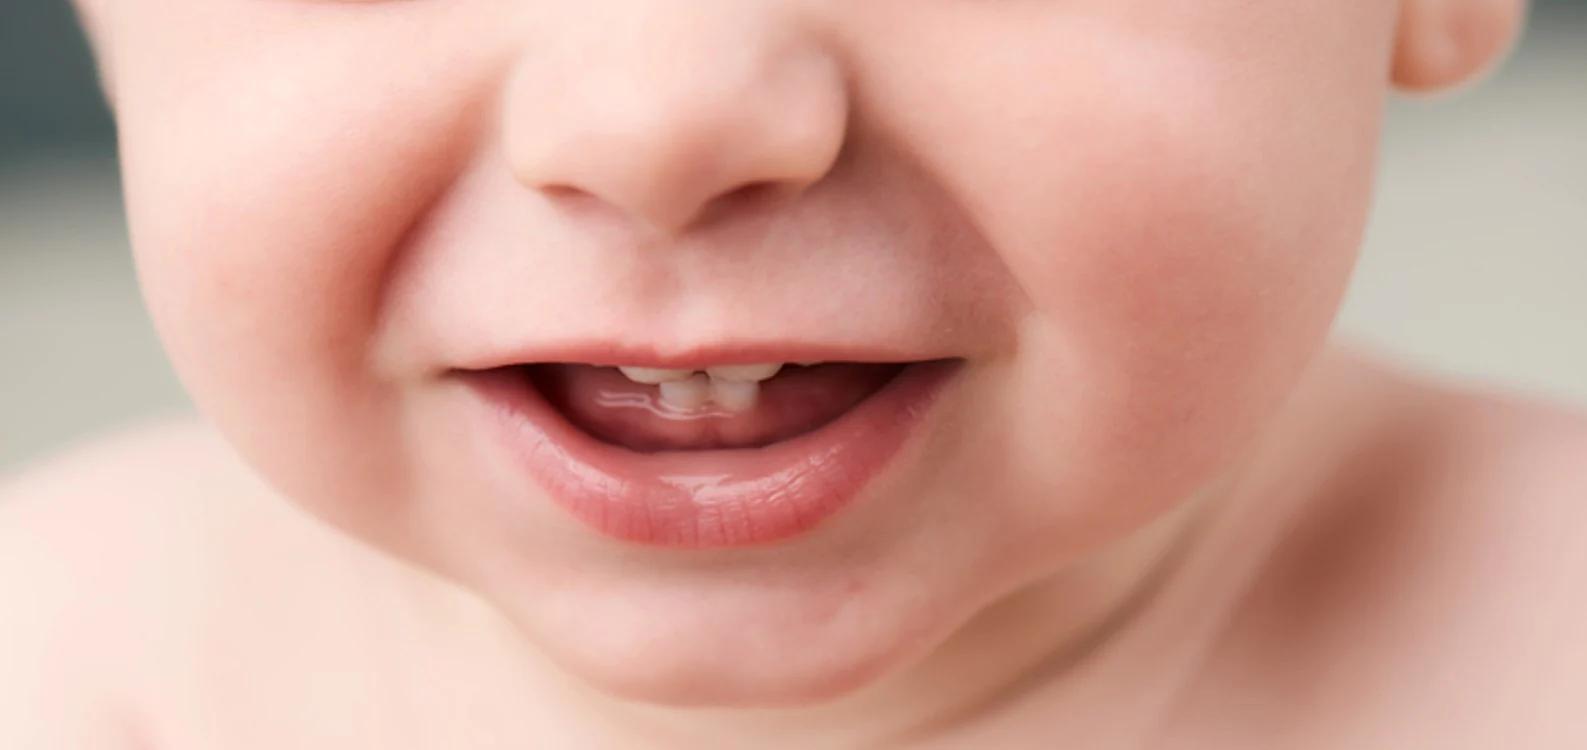 dientes en bebes de 1 año - Qué pasa si mi bebé tiene 1 año y no tiene dientes